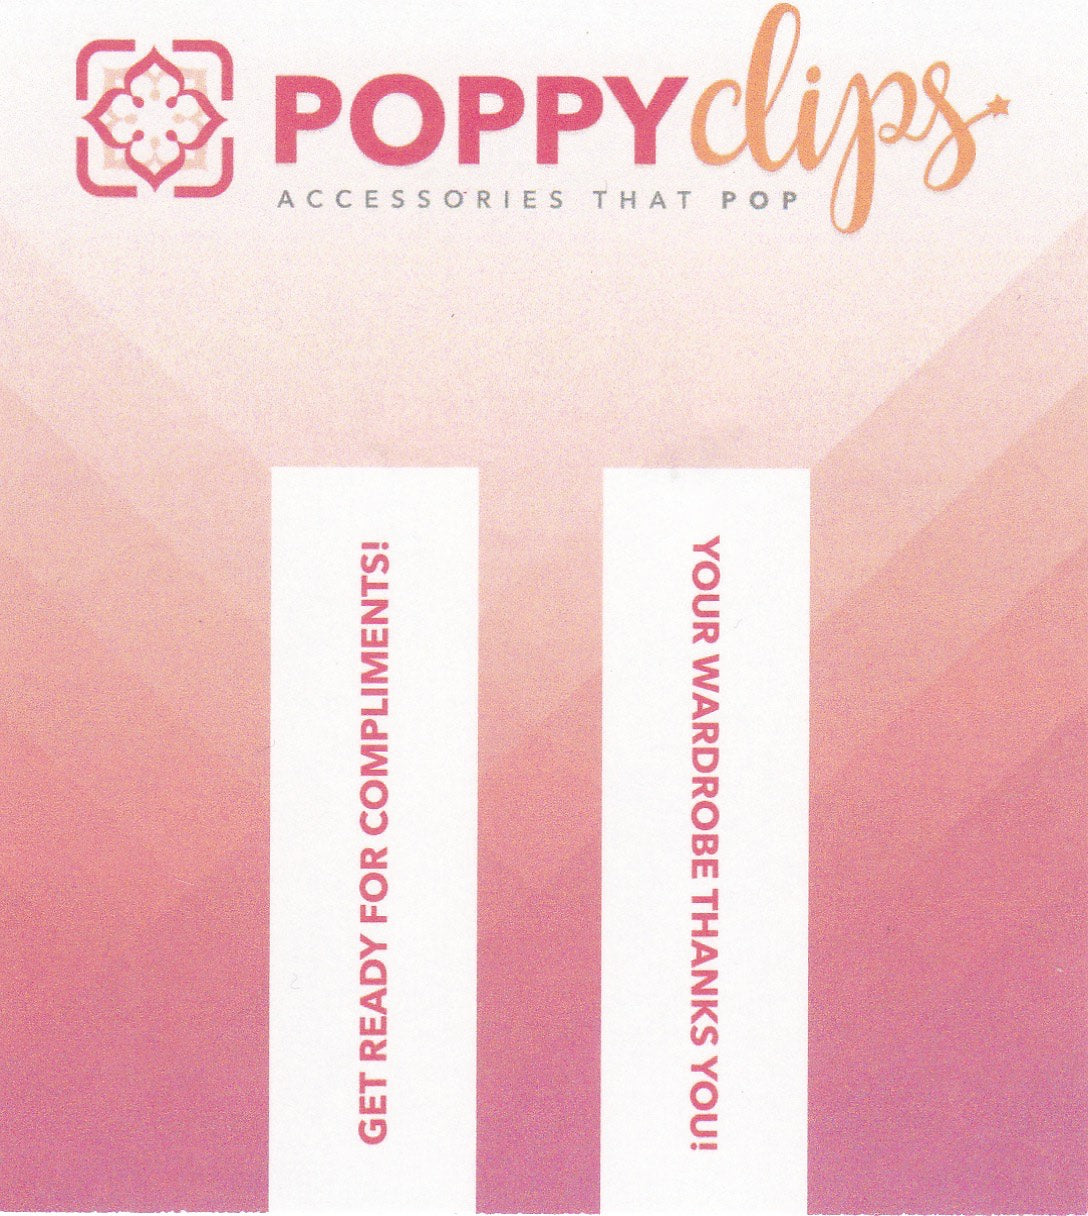 PoppyClips: Starburst